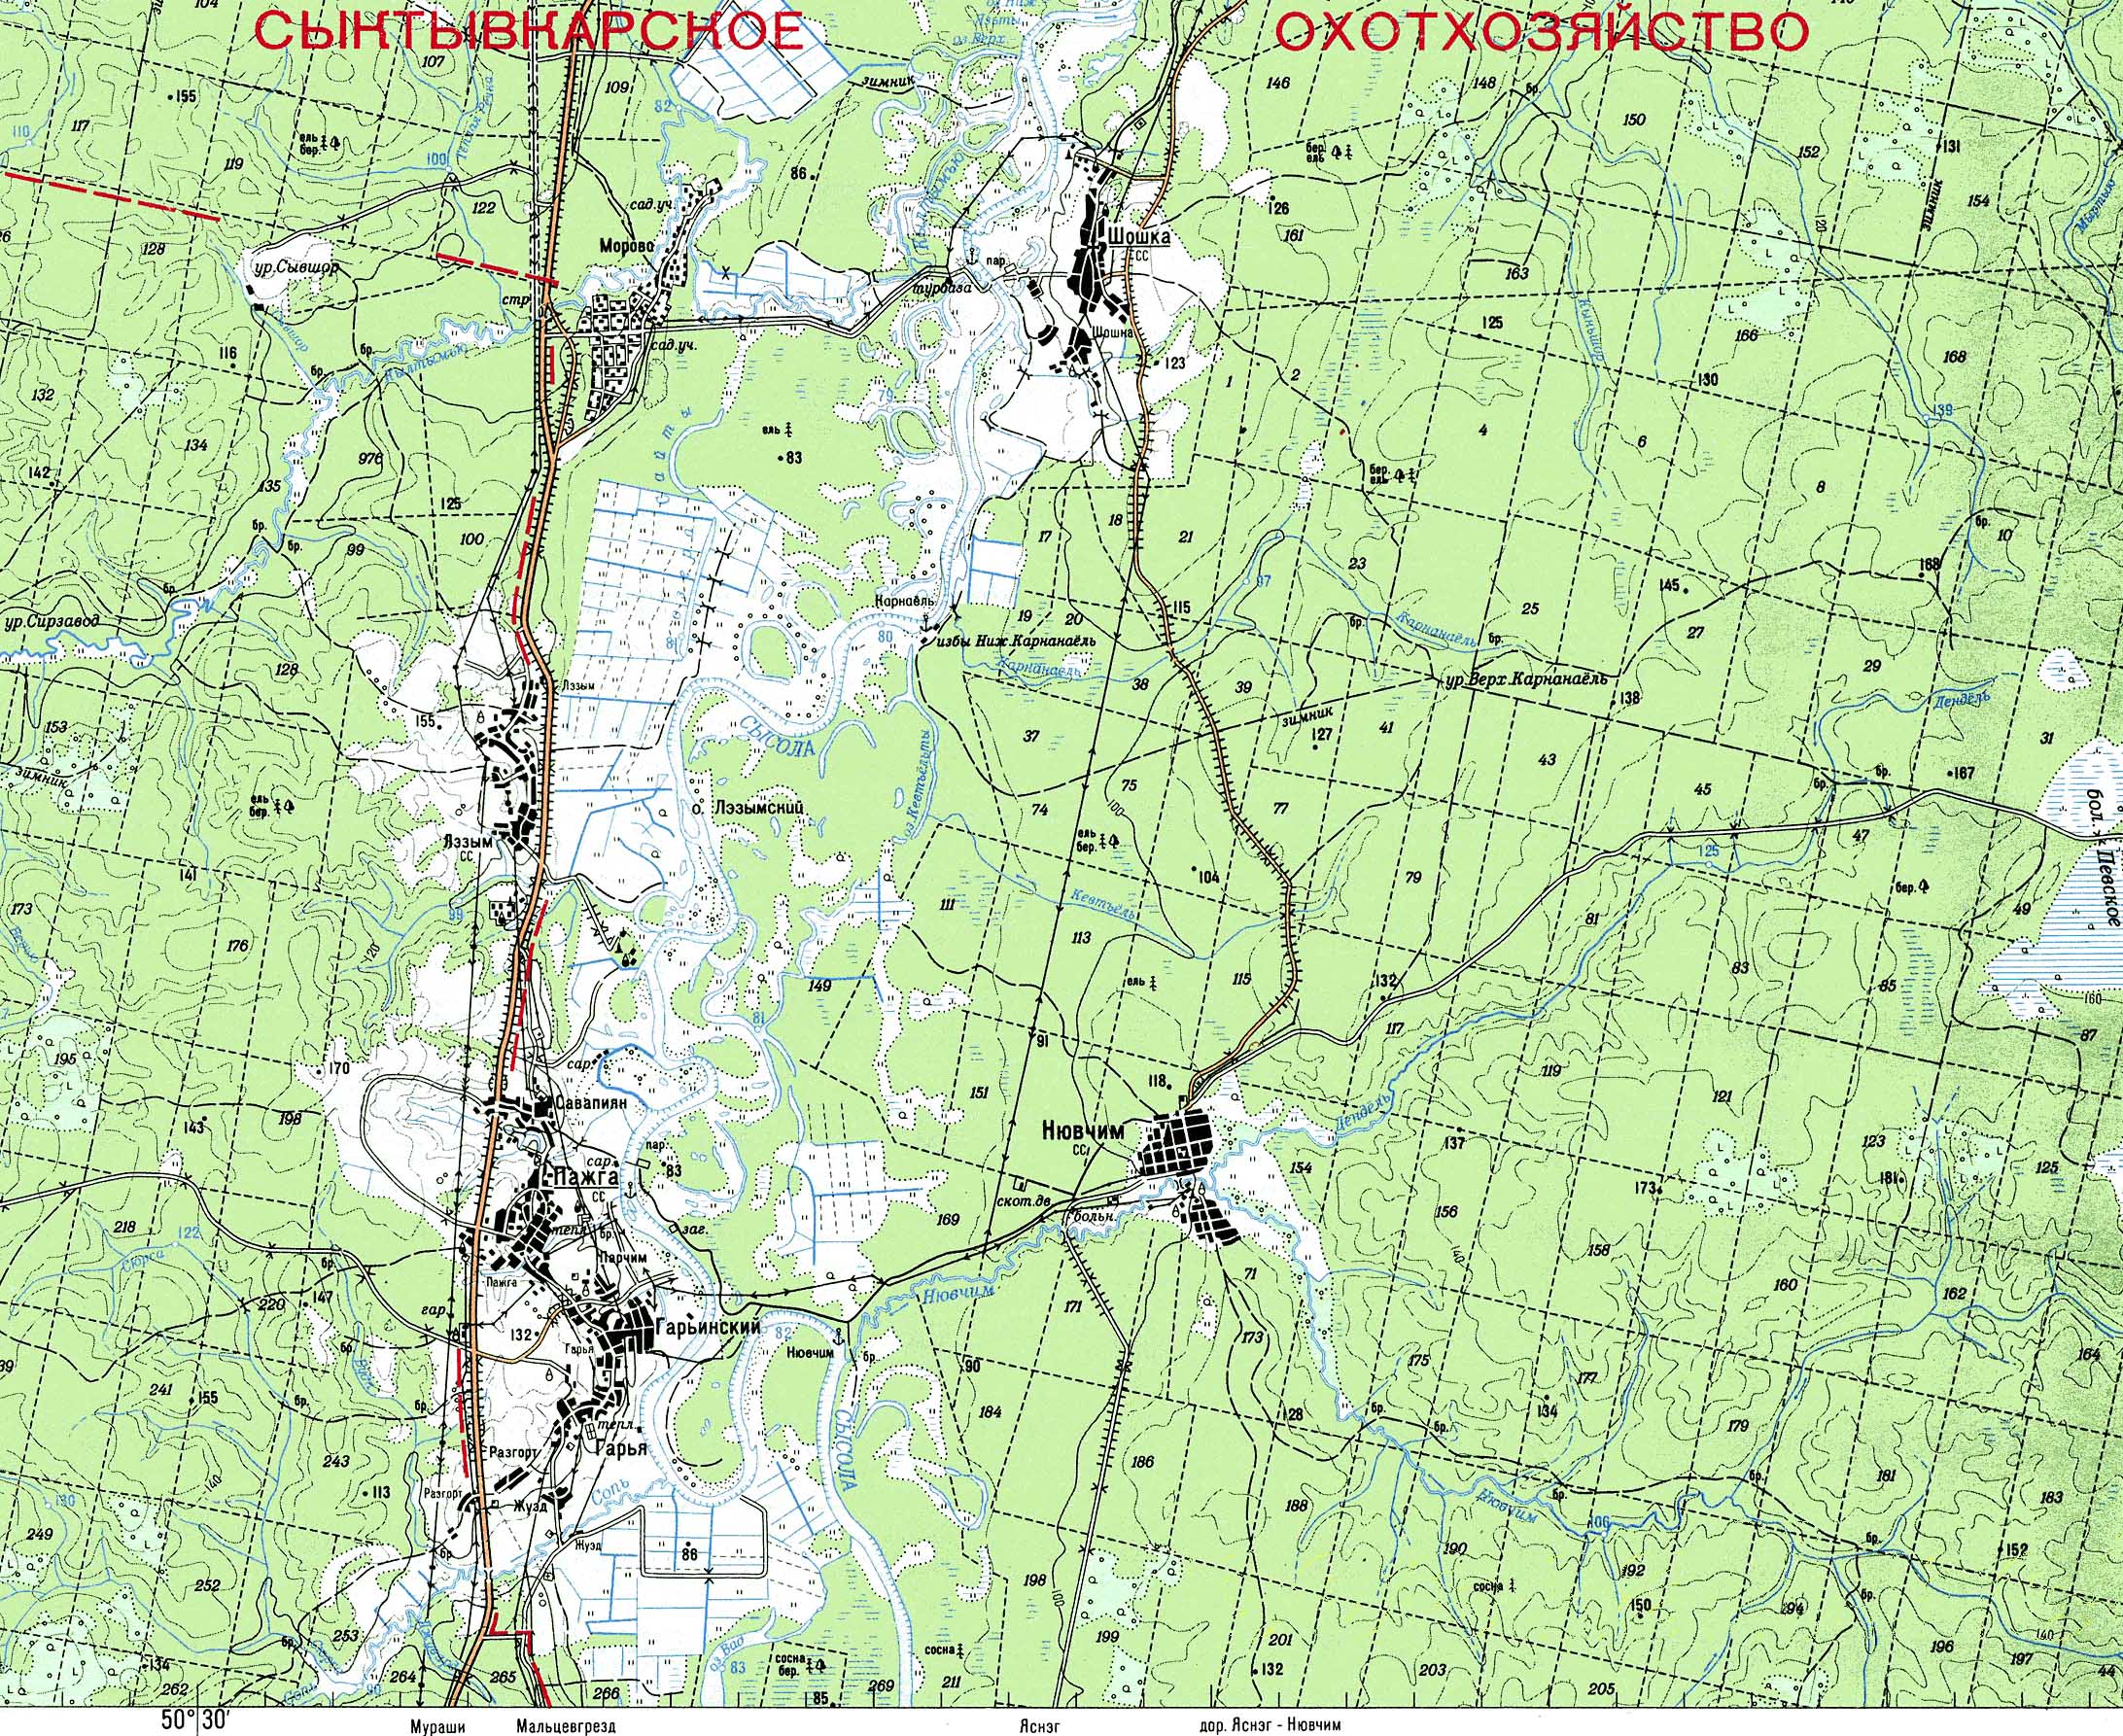 Топографическая карта (двухкилометровка) Сыктывдинского района. Шошка. Пажга. Нювчим >>>